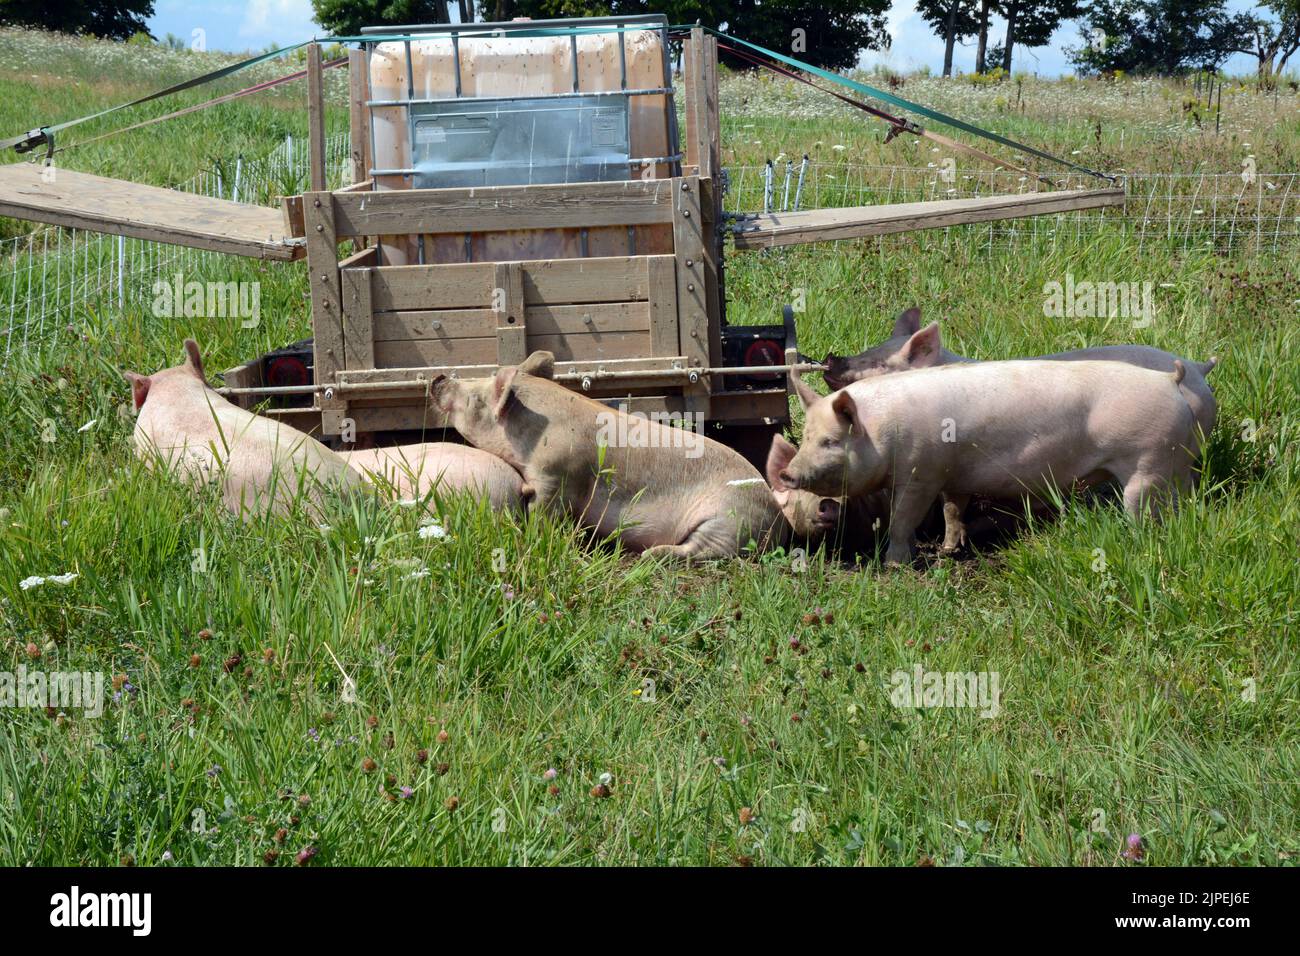 Les porcs en liberté qui boivent à partir d'une cuvette d'eau élevés humainement dans une petite ferme biologique durable près de la ville de Creemore, Ontario, Canada. Banque D'Images